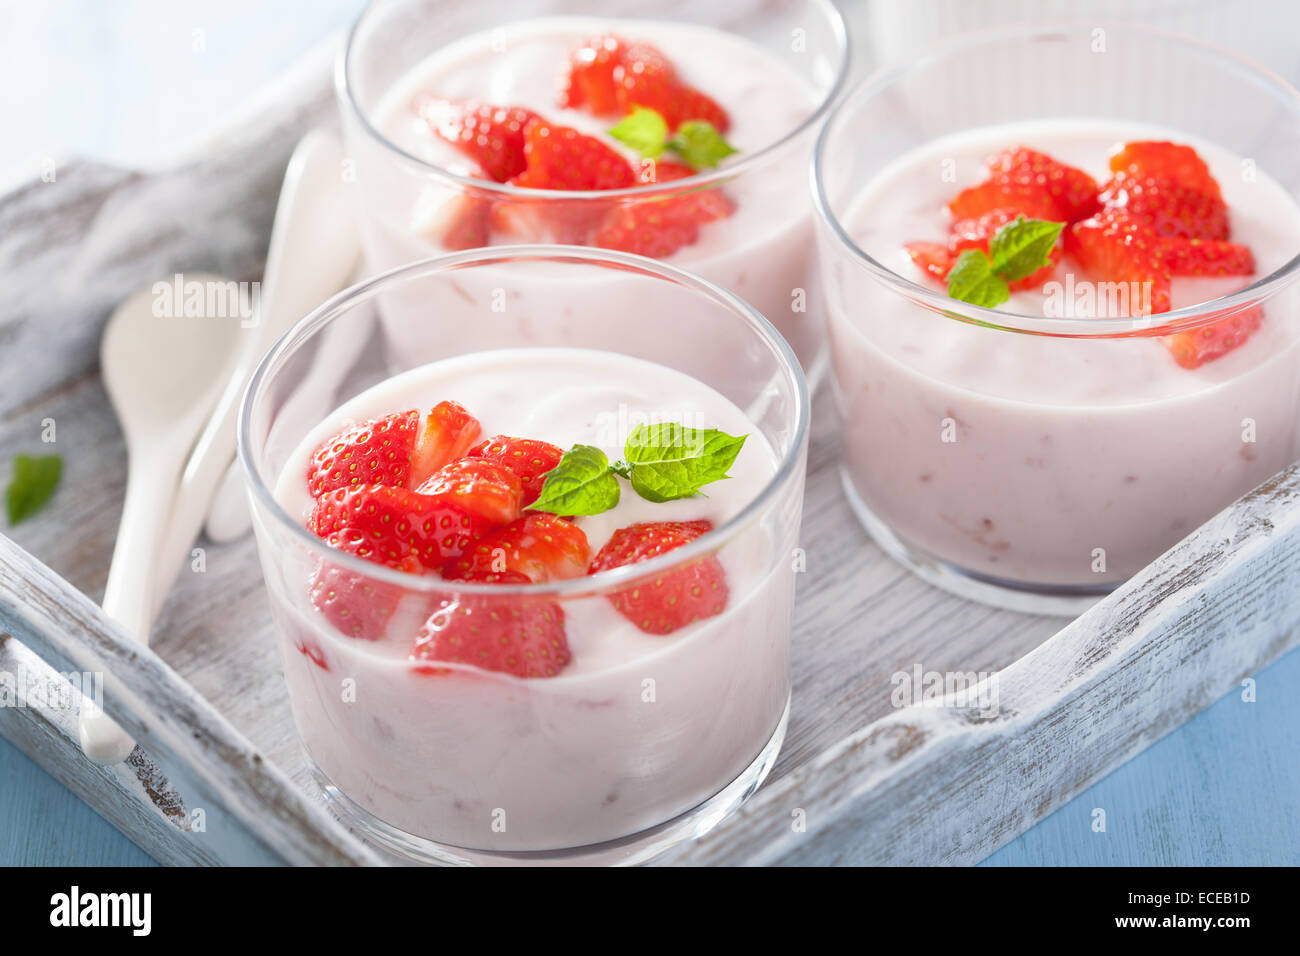 Desayuno saludable con yogurt y fresa Foto de stock